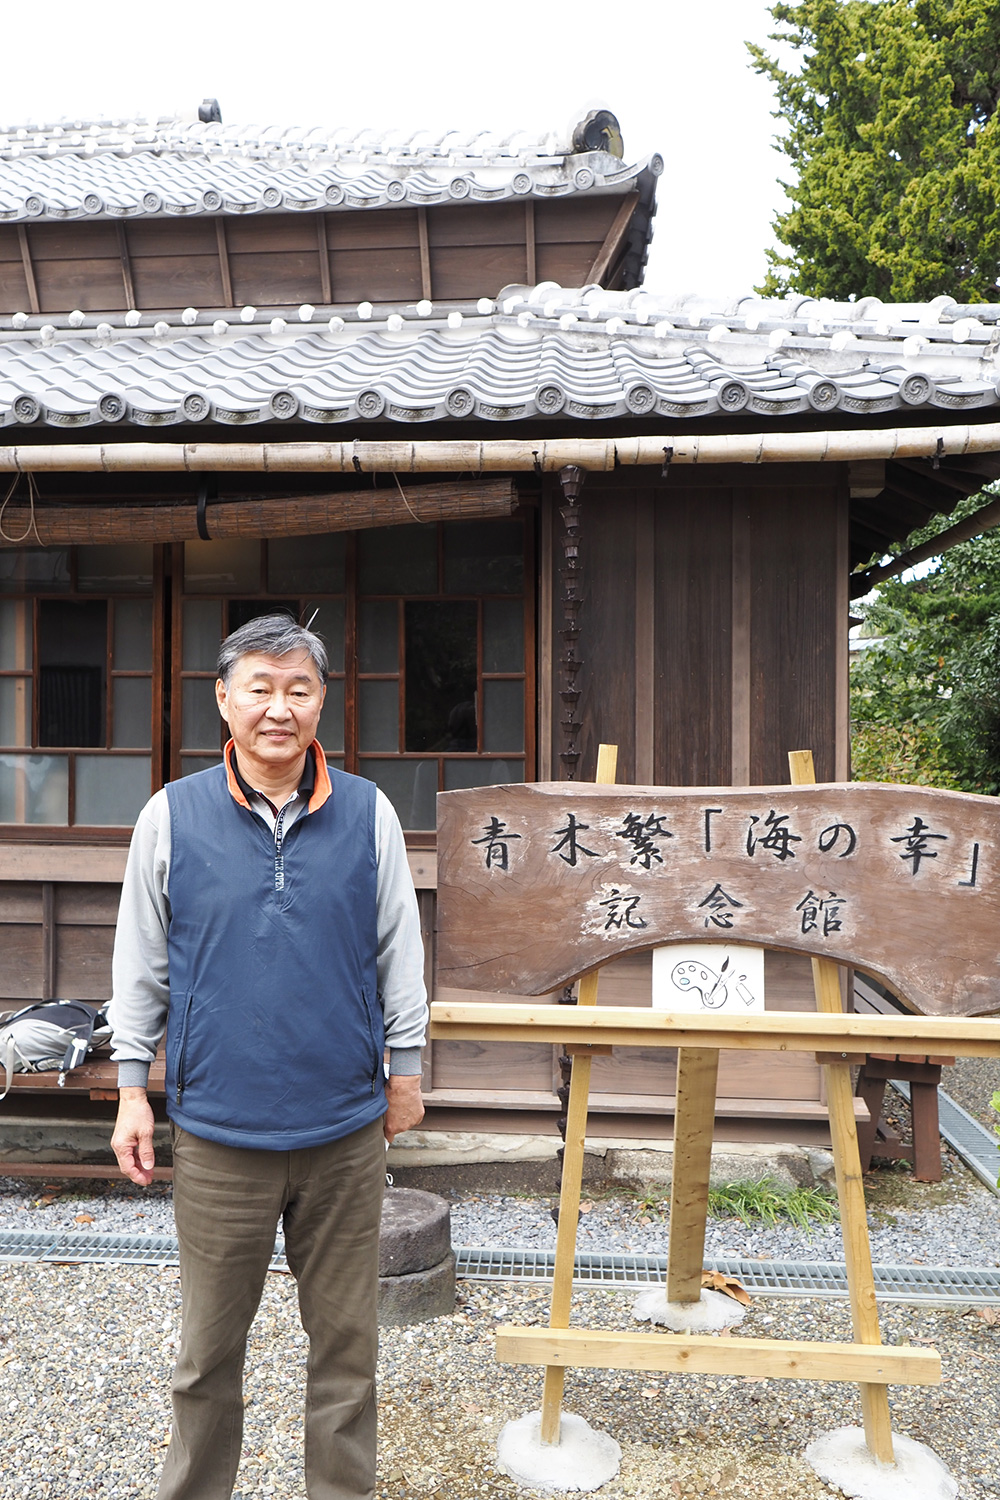 定年後に『青木繁「海の幸」記念館』の館長を務める小谷福哲氏（72歳）。